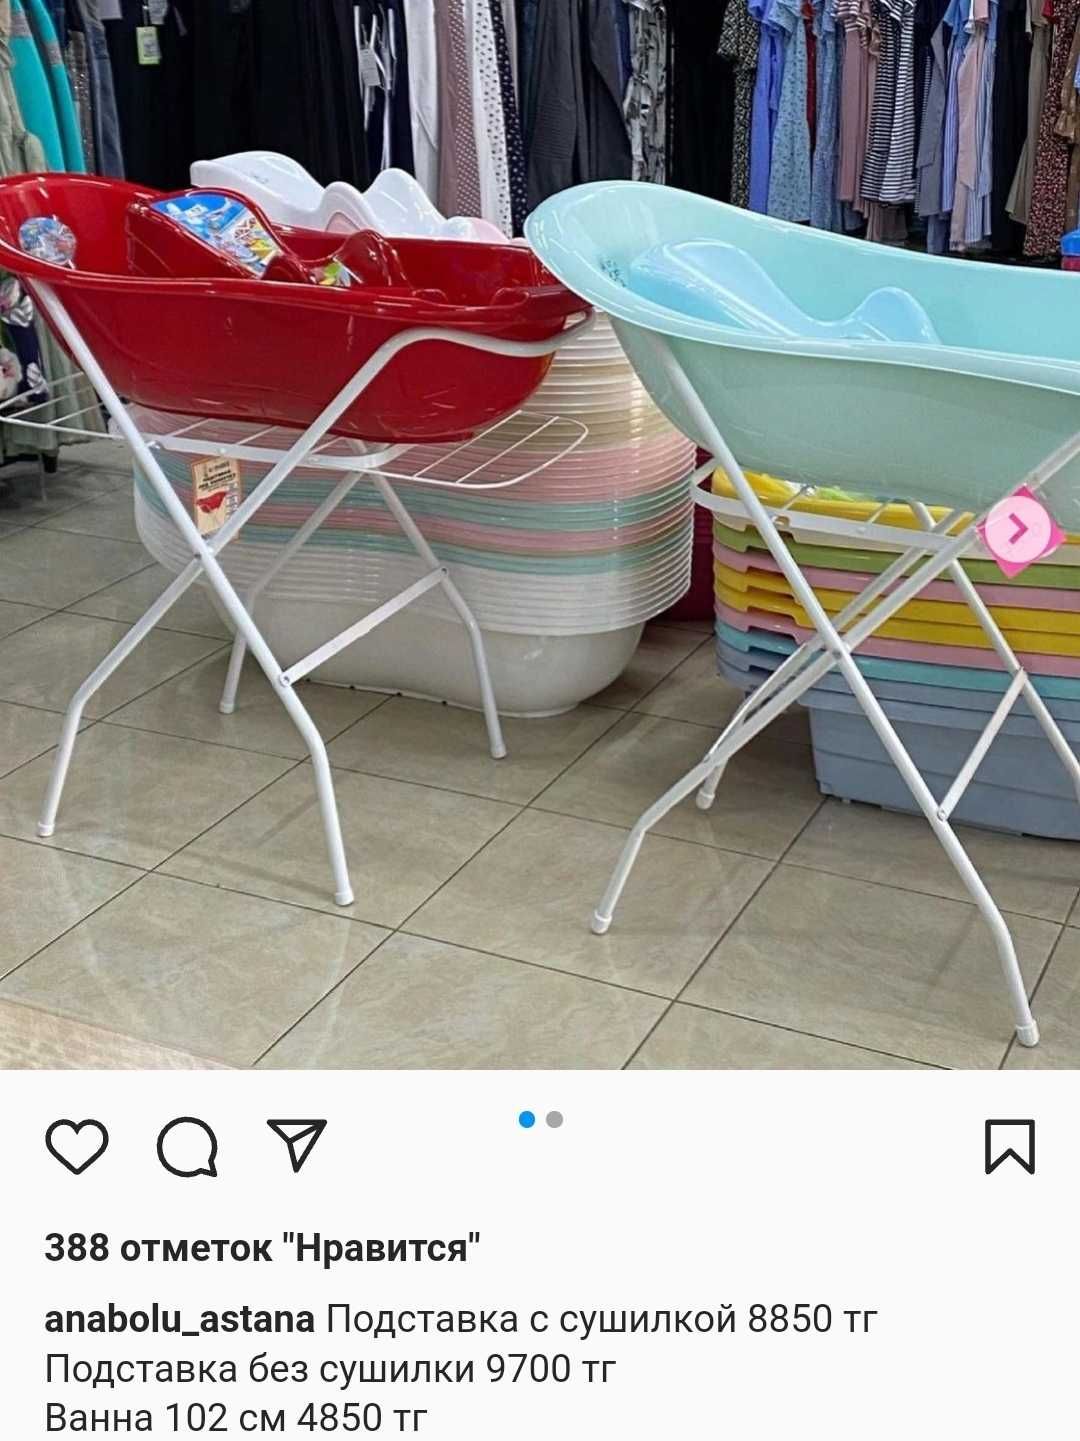 Подставка для купания младенцев